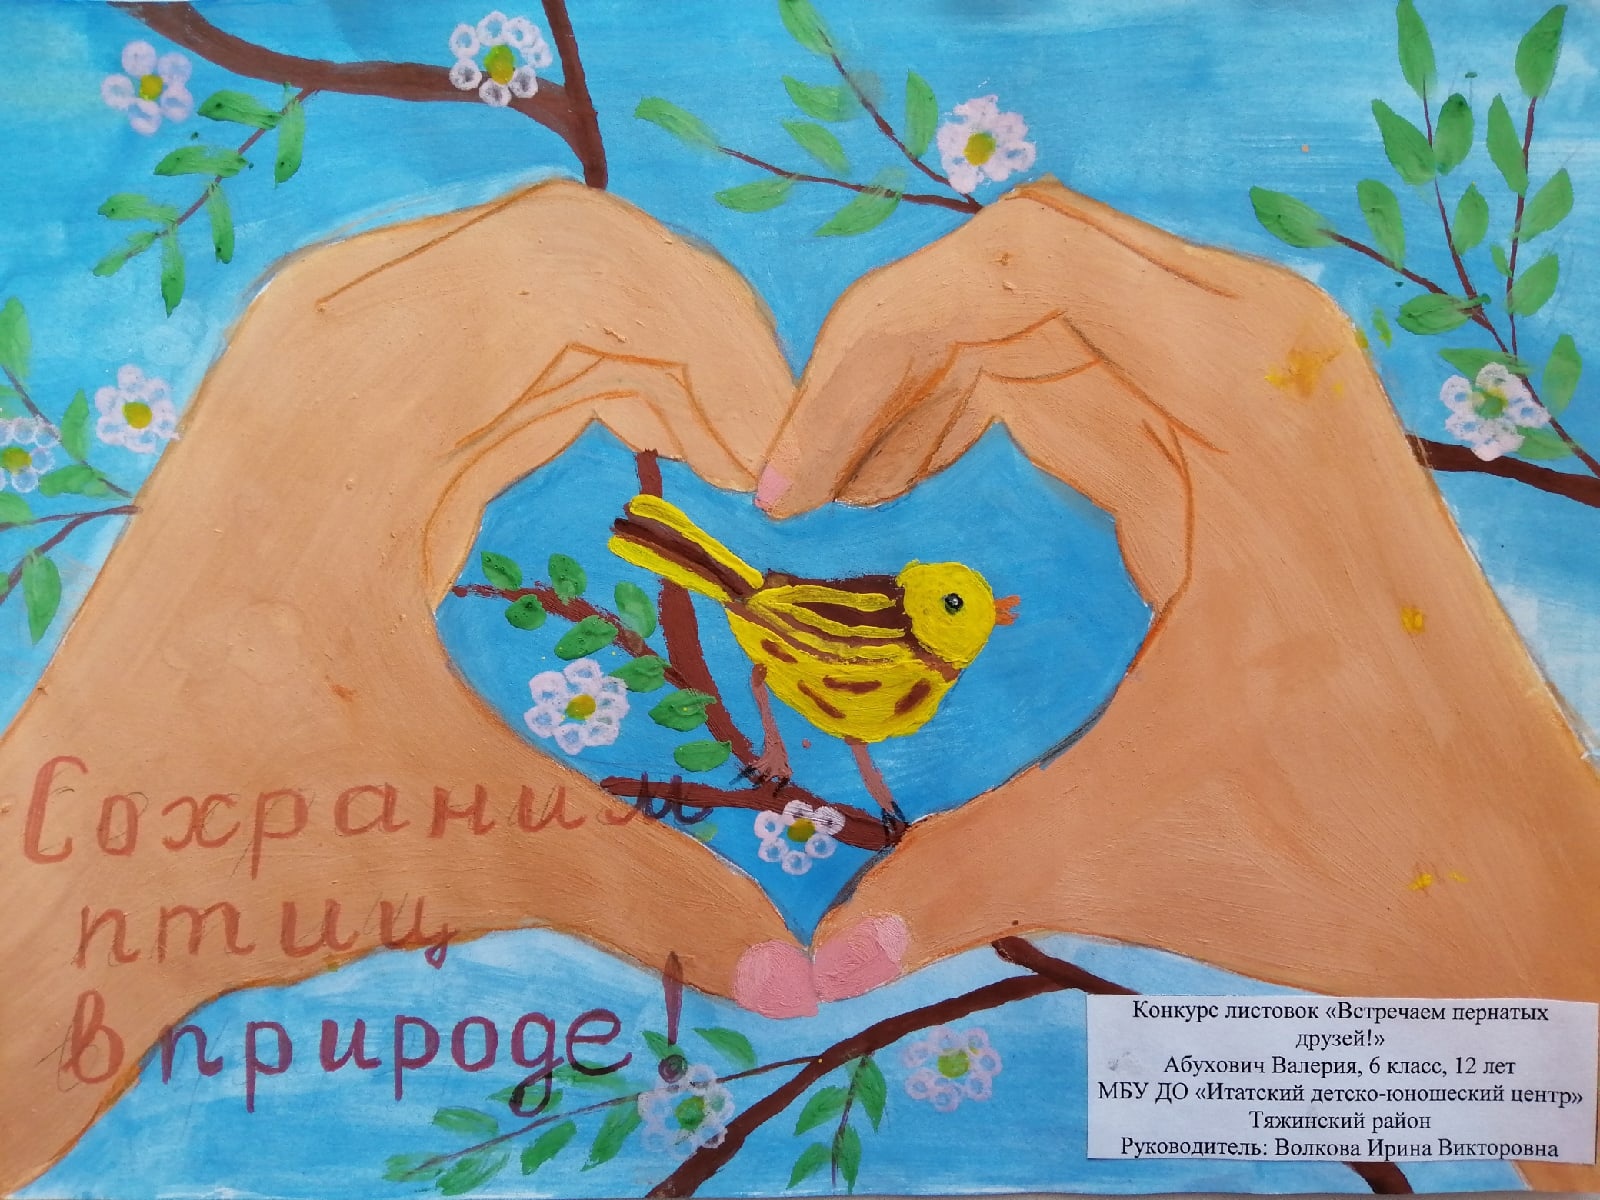 Акция Птицеград в детском саду